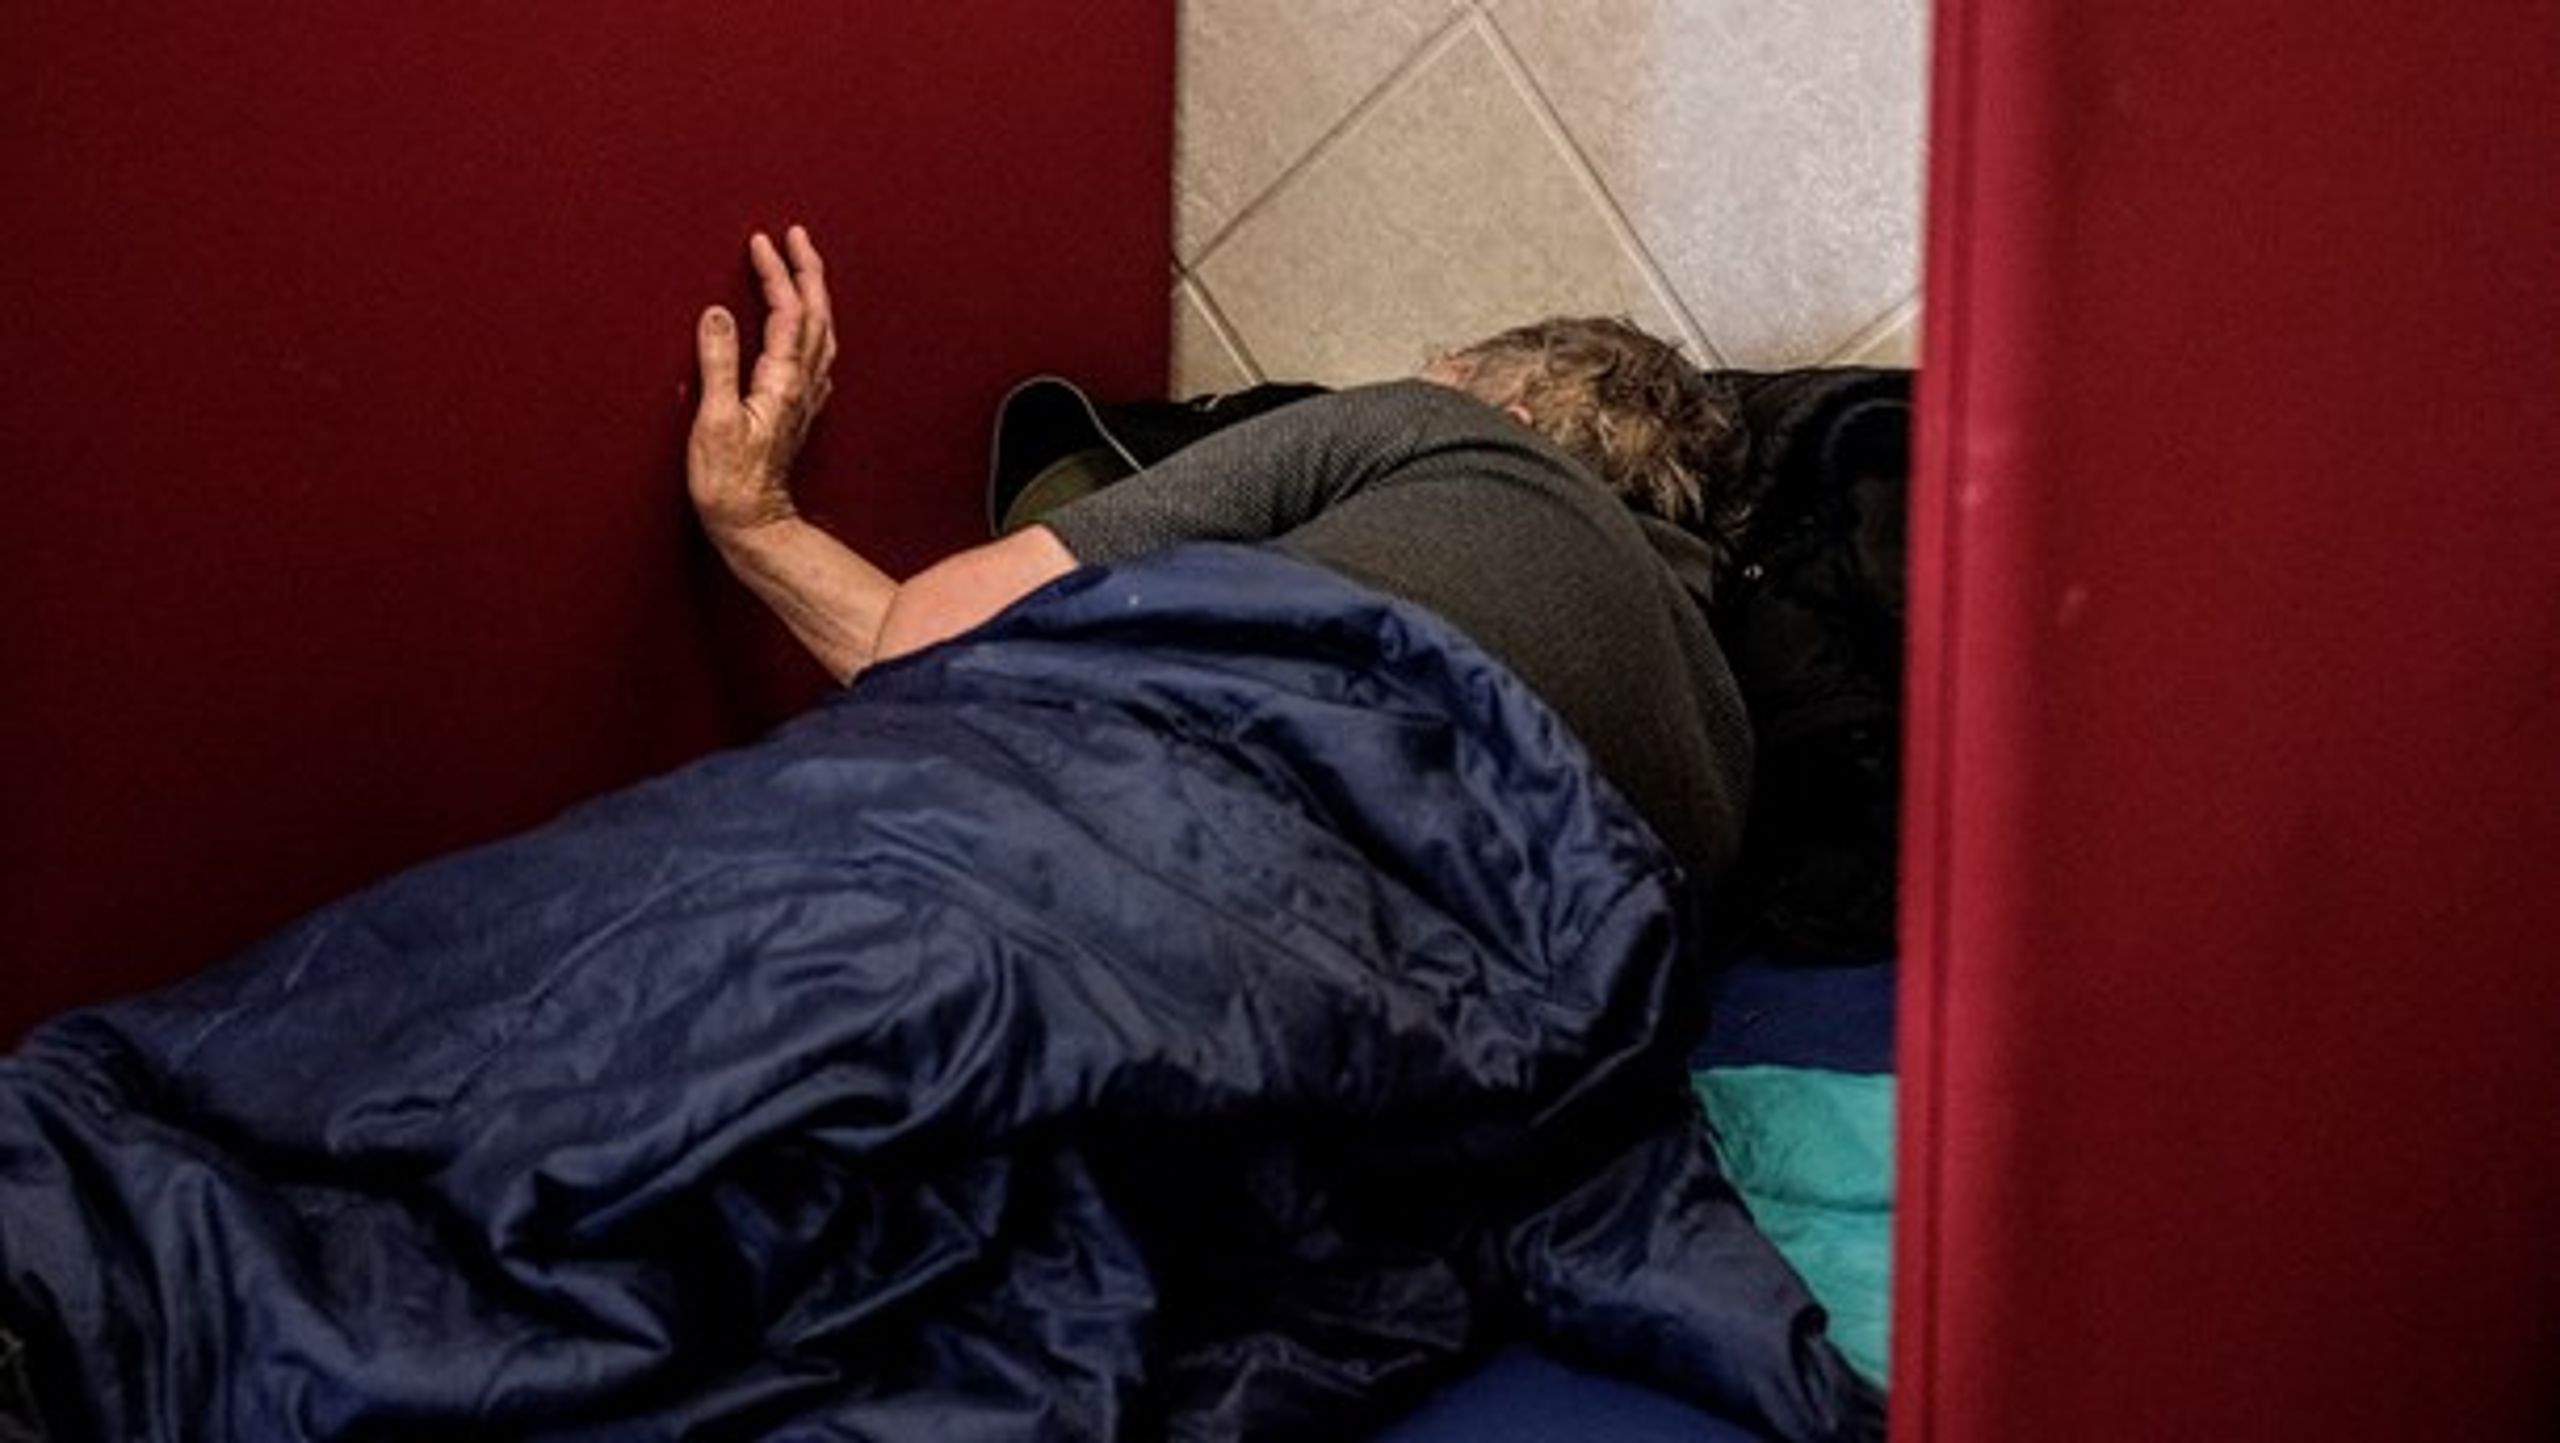 Det grundlæggende problem med skiftende regeringers hjemløsestrategier i Danmark er, at hjemløshed alene anskues som et socialpolitisk problem, skriver Vibe Klarup.